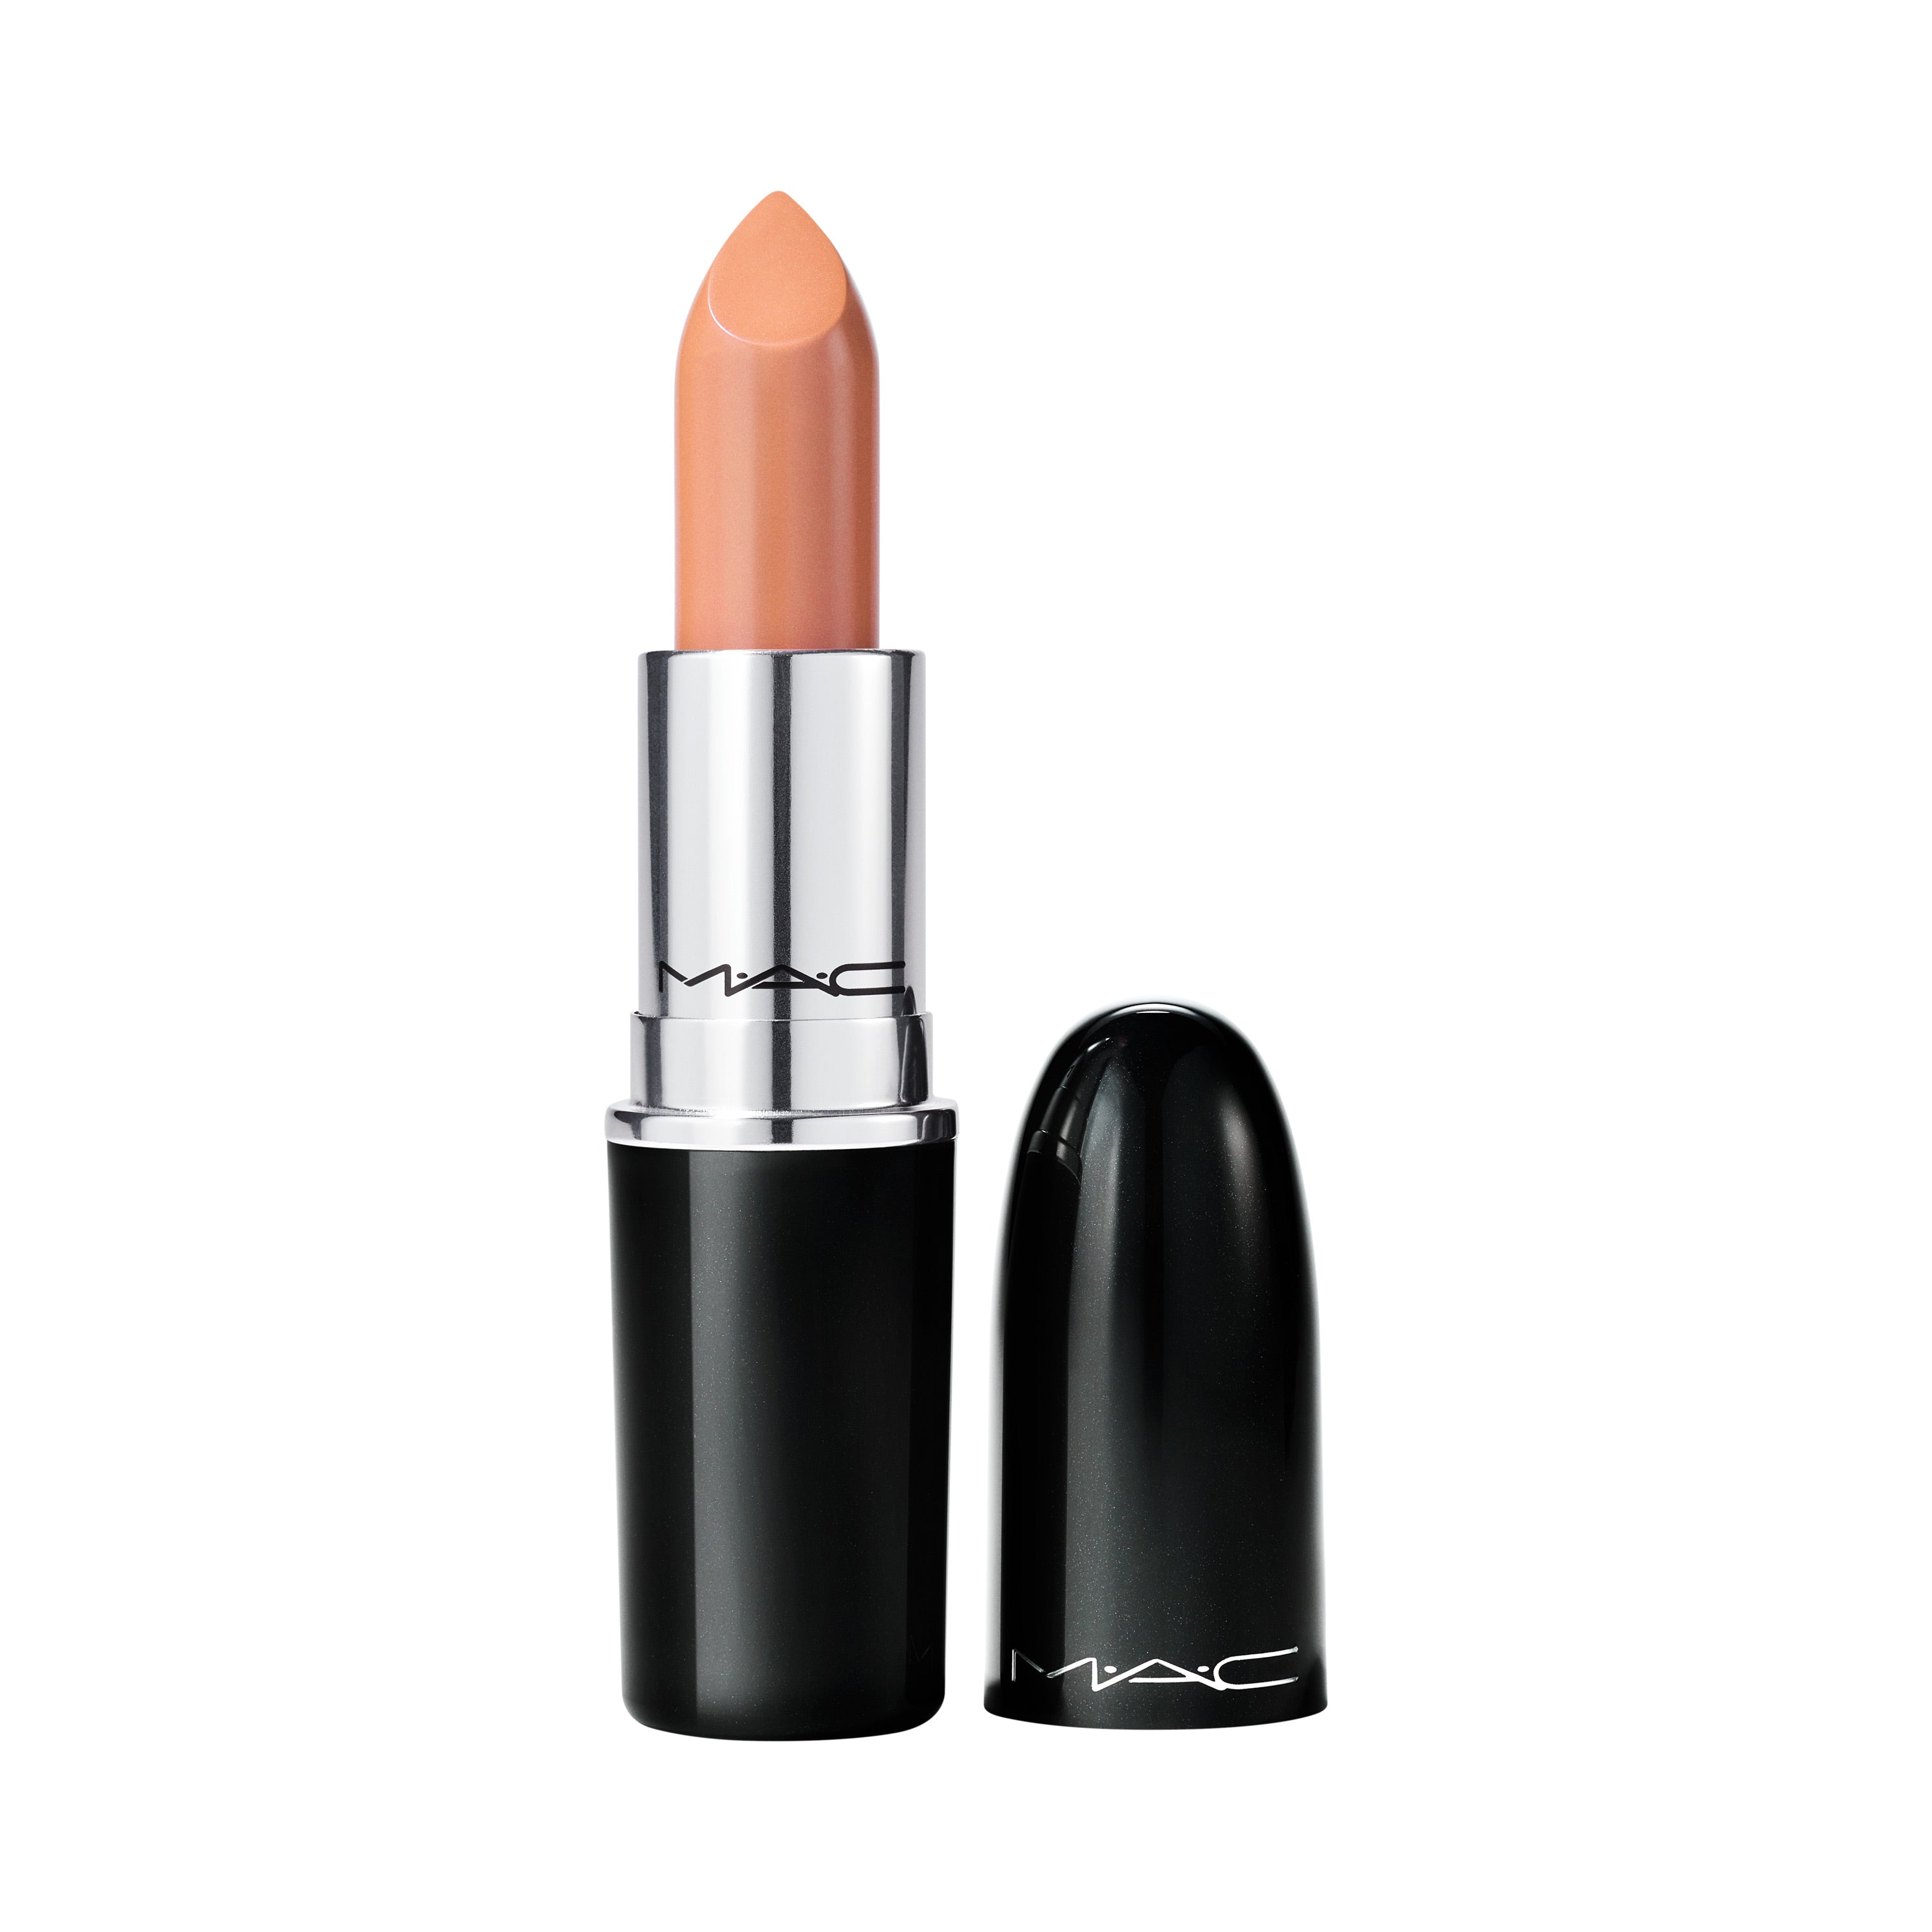 M·A·C Lustreglass Sheer-shine Lipstick